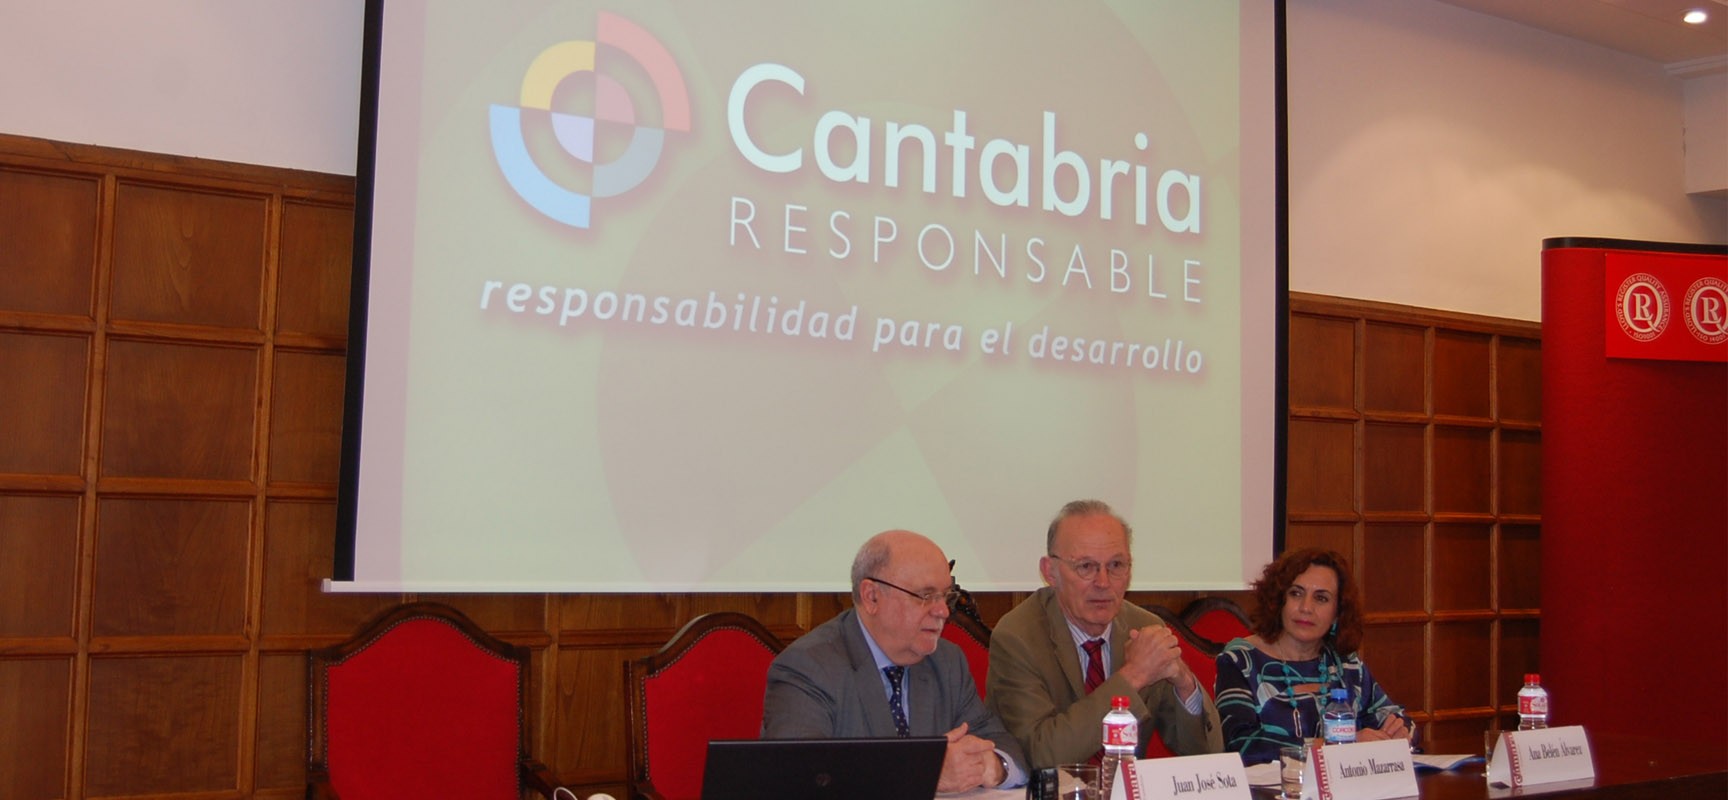 El Gobierno de Cantabria promueve que más empresas se sumen a la Responsabilidad Social Empresarial